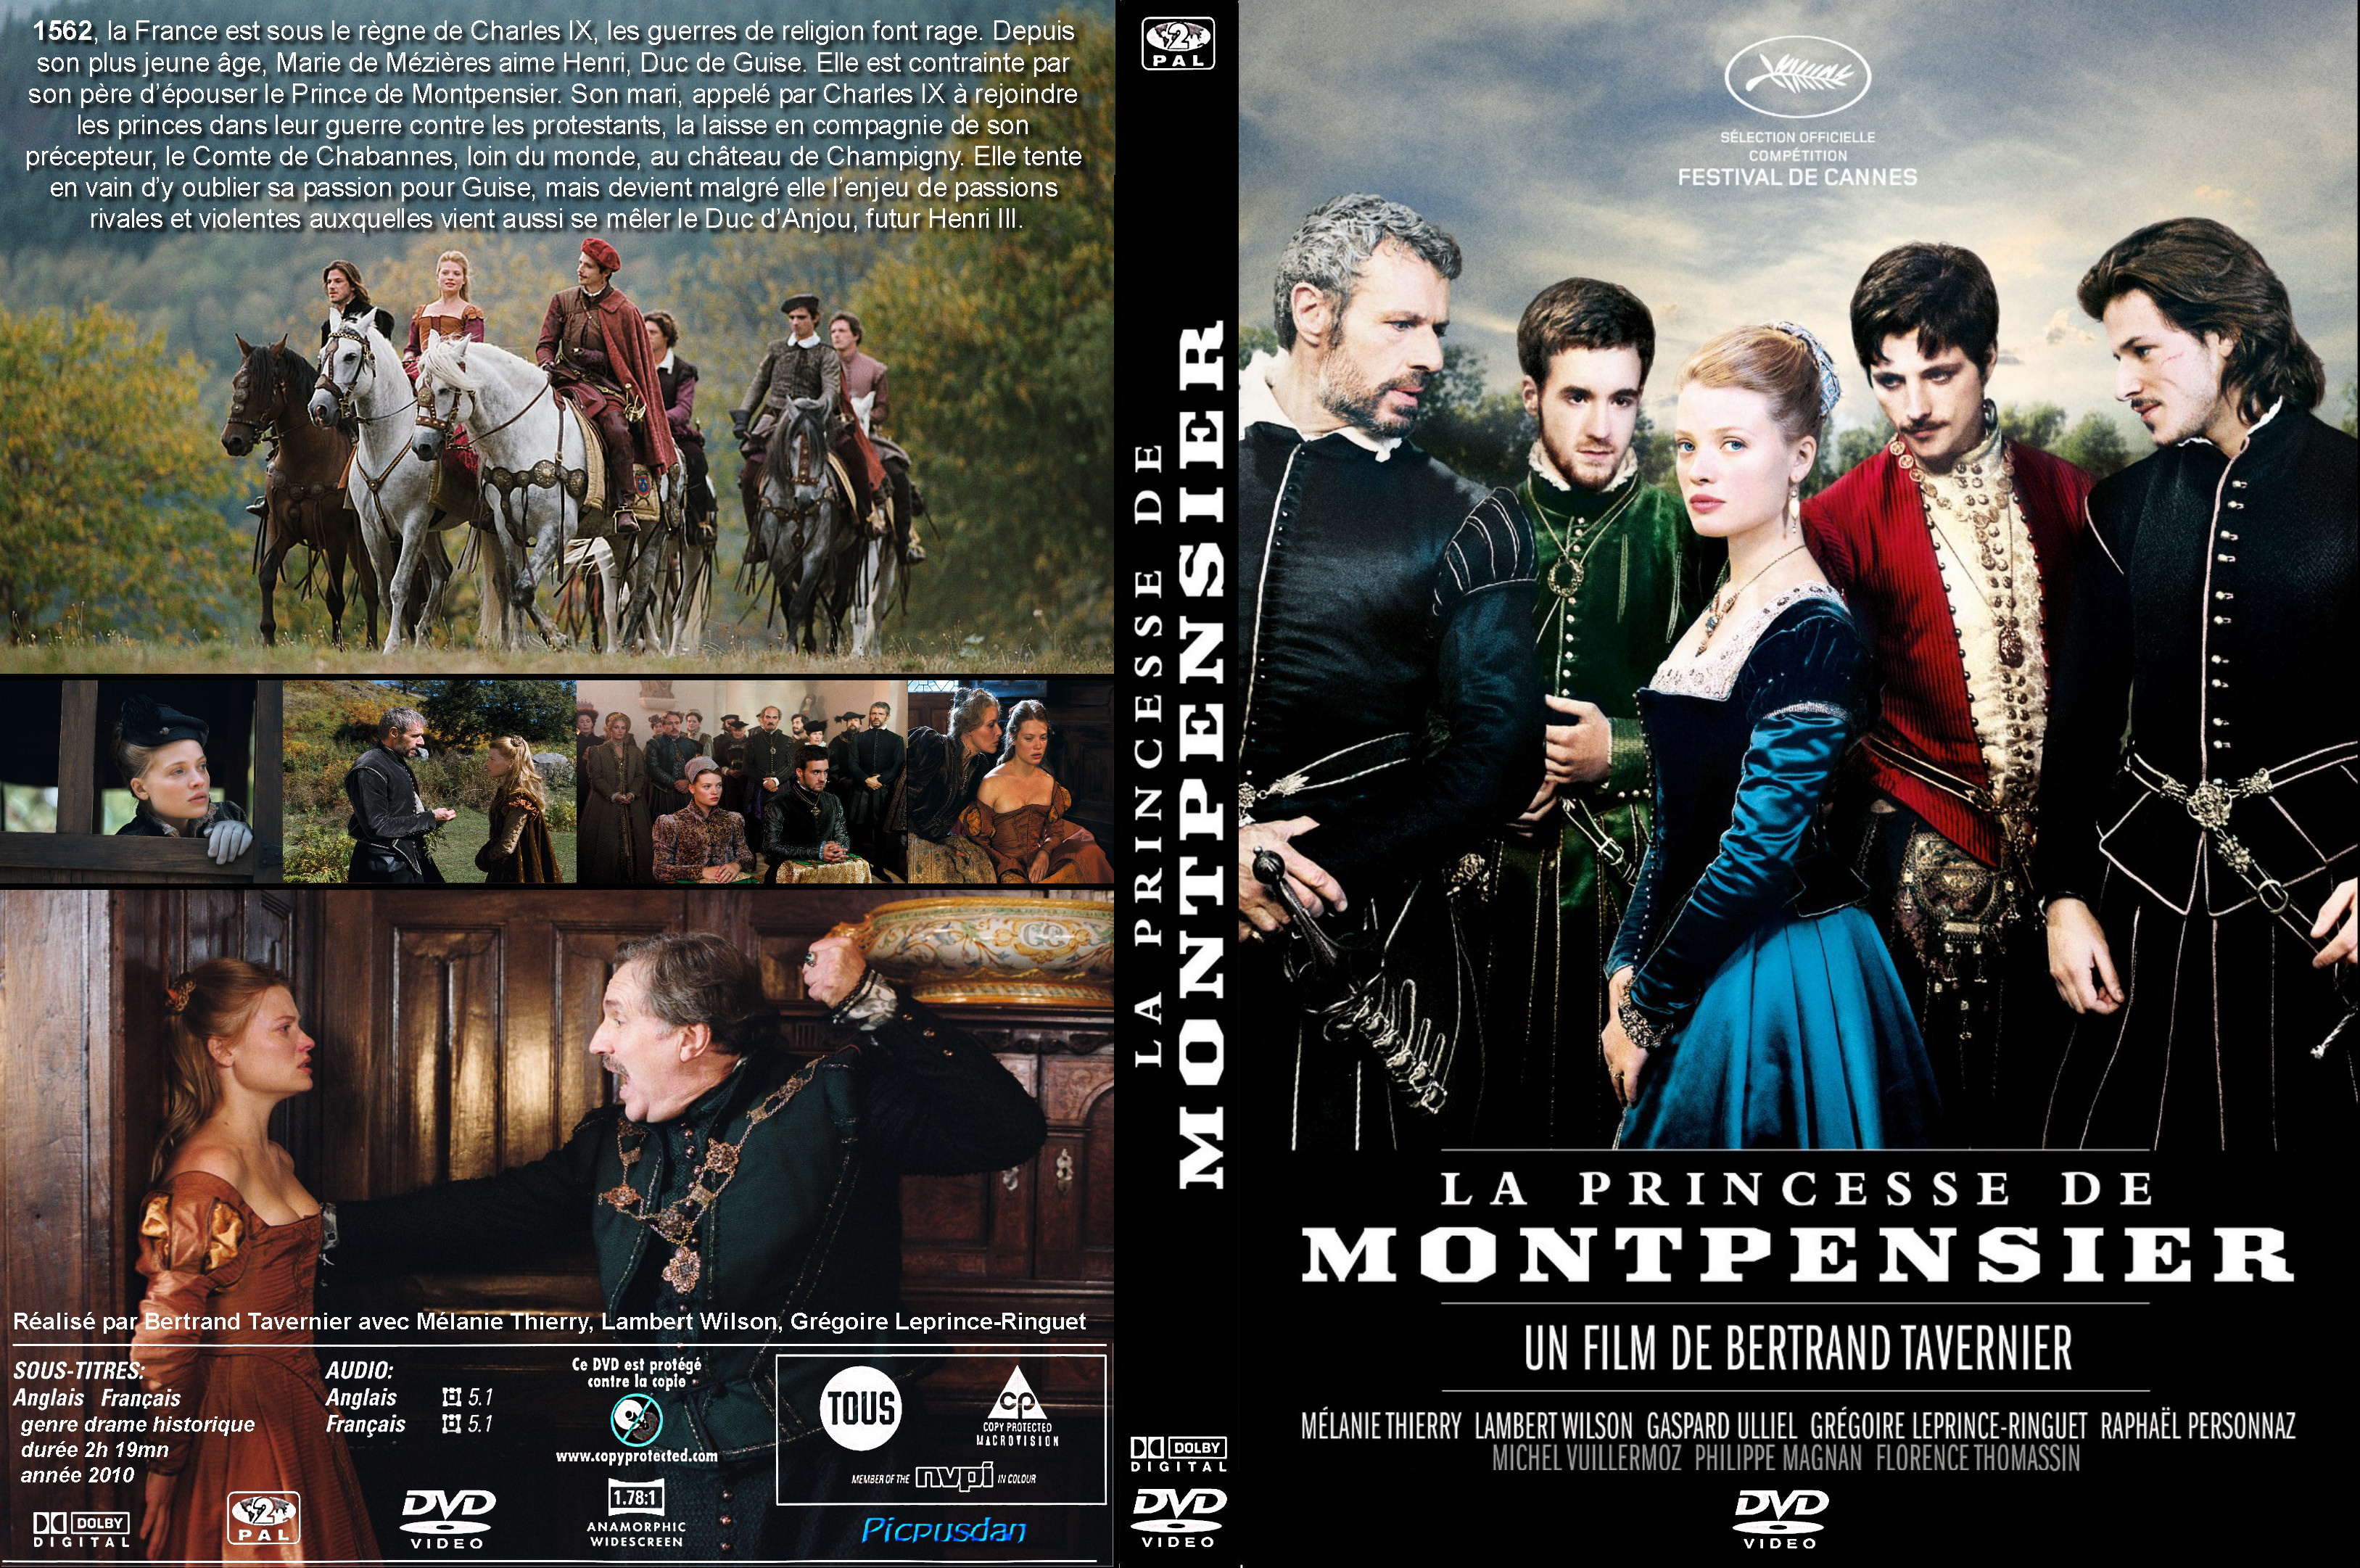 Jaquette DVD La Princesse de Montpensier custom